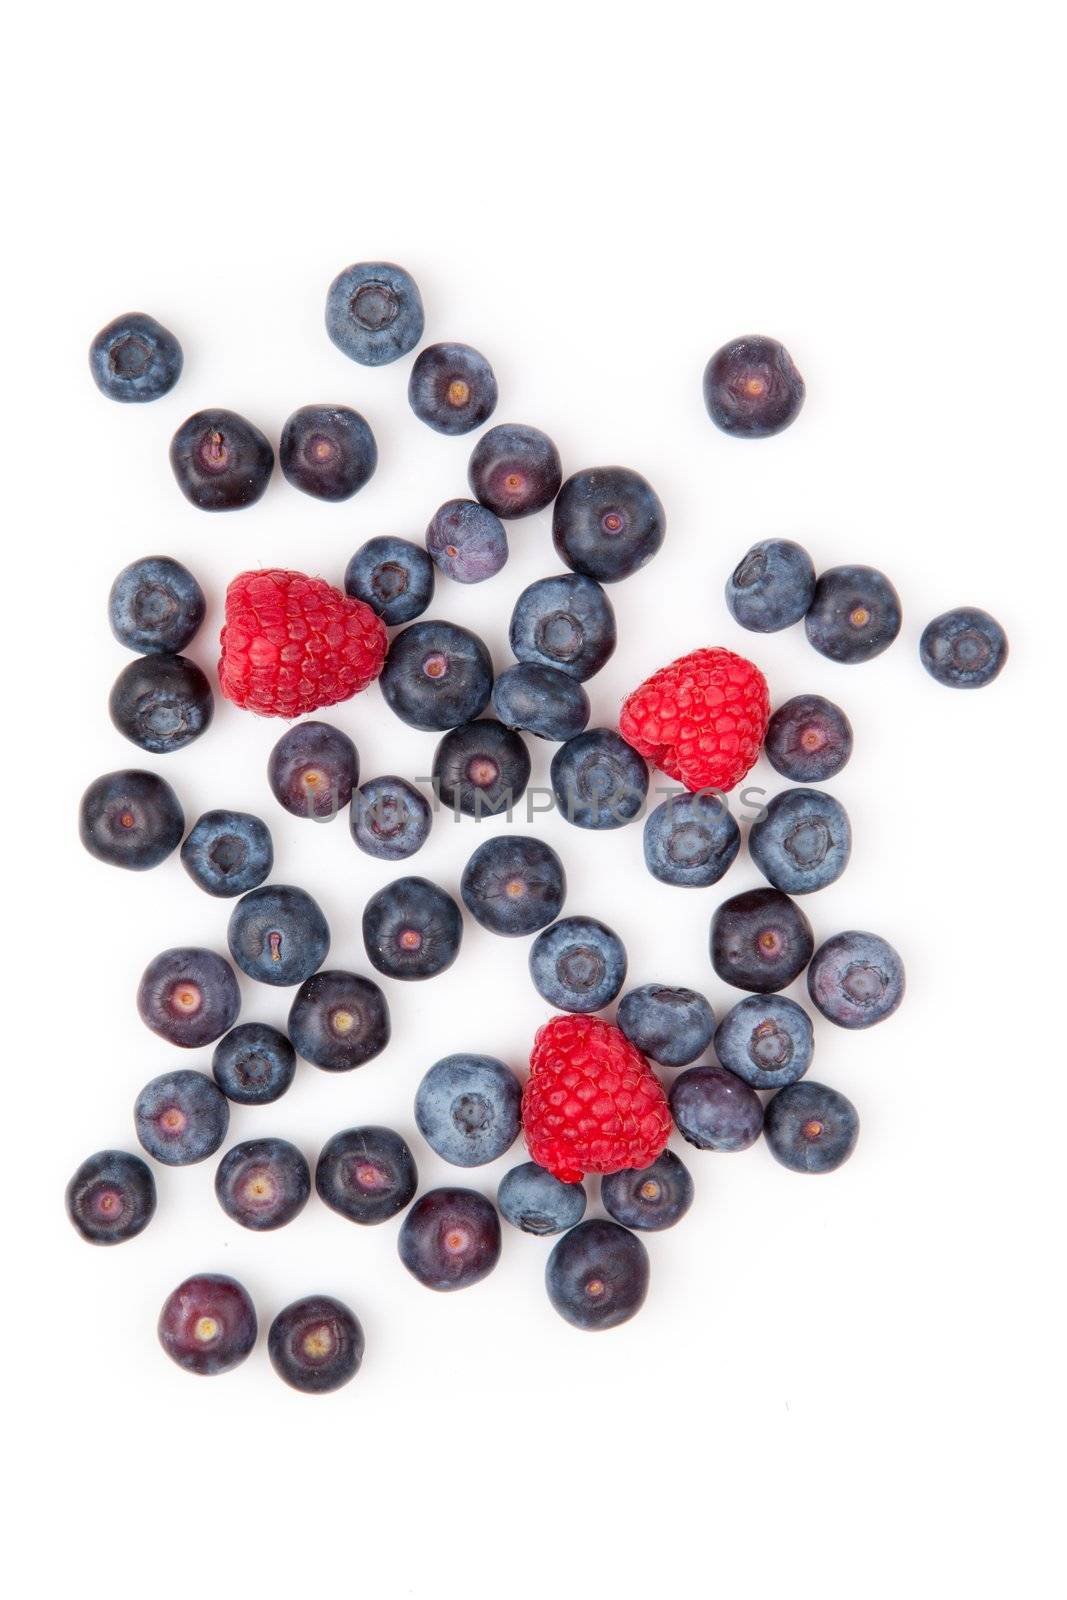 Raspberries and blueberries by Wavebreakmedia